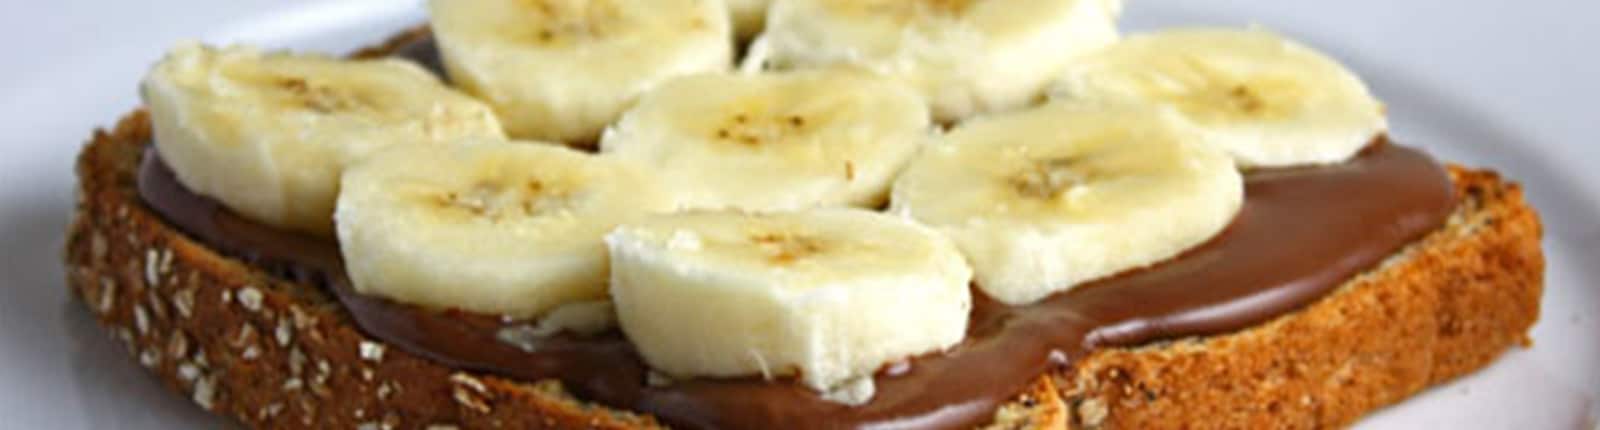 Tartinade à la banane et au Nutella<sup>®</sup>